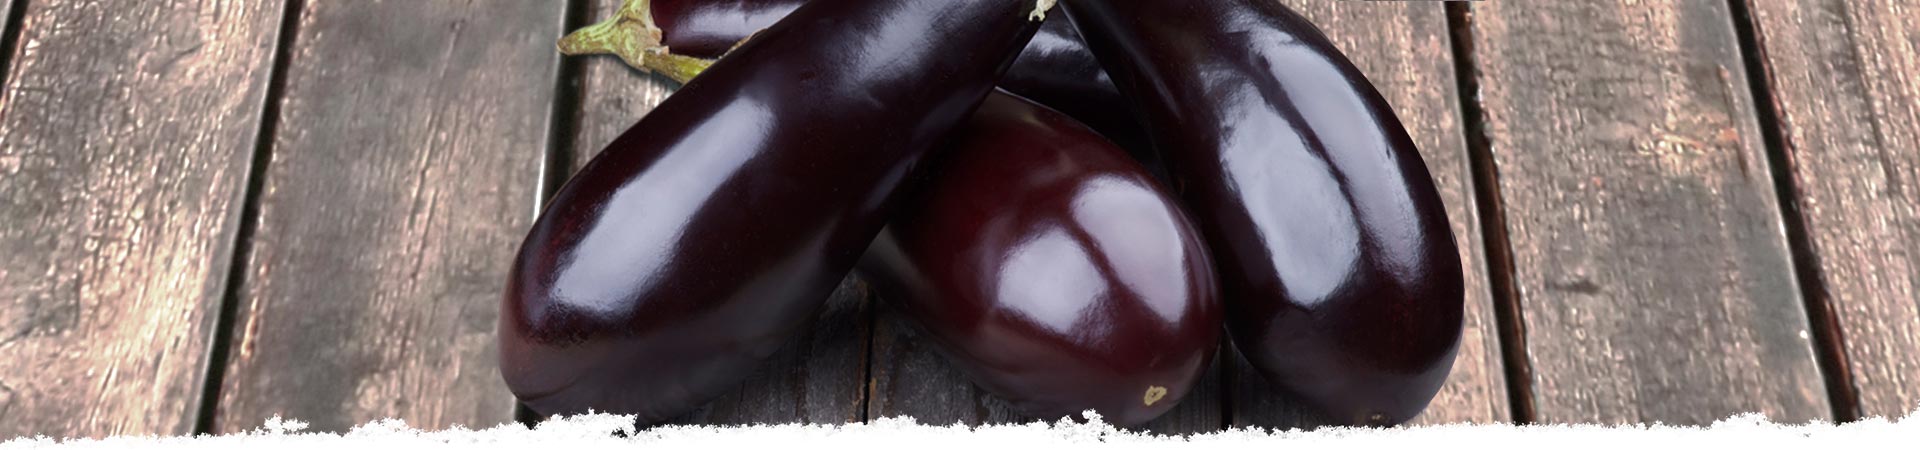 Selecting eggplant